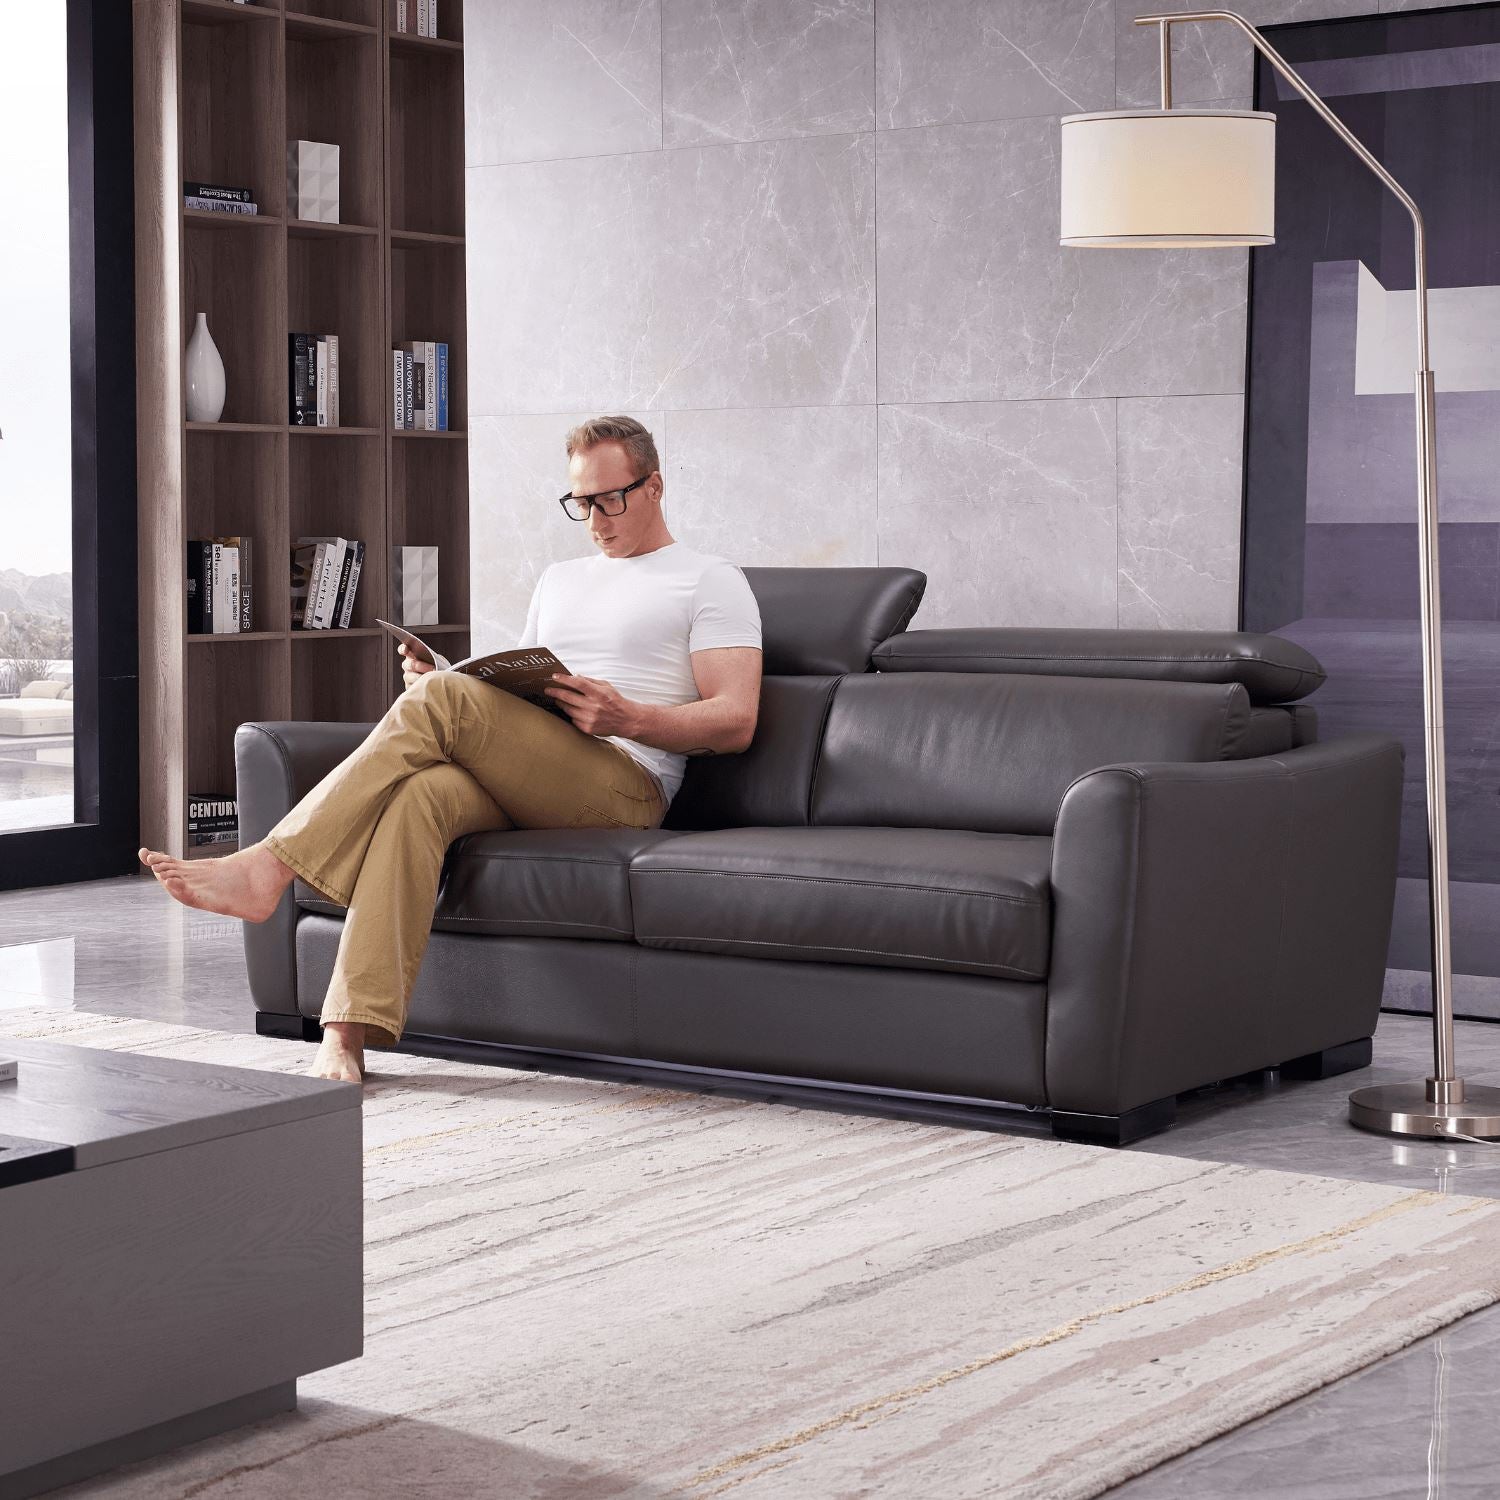 modern design foam sofa bed save